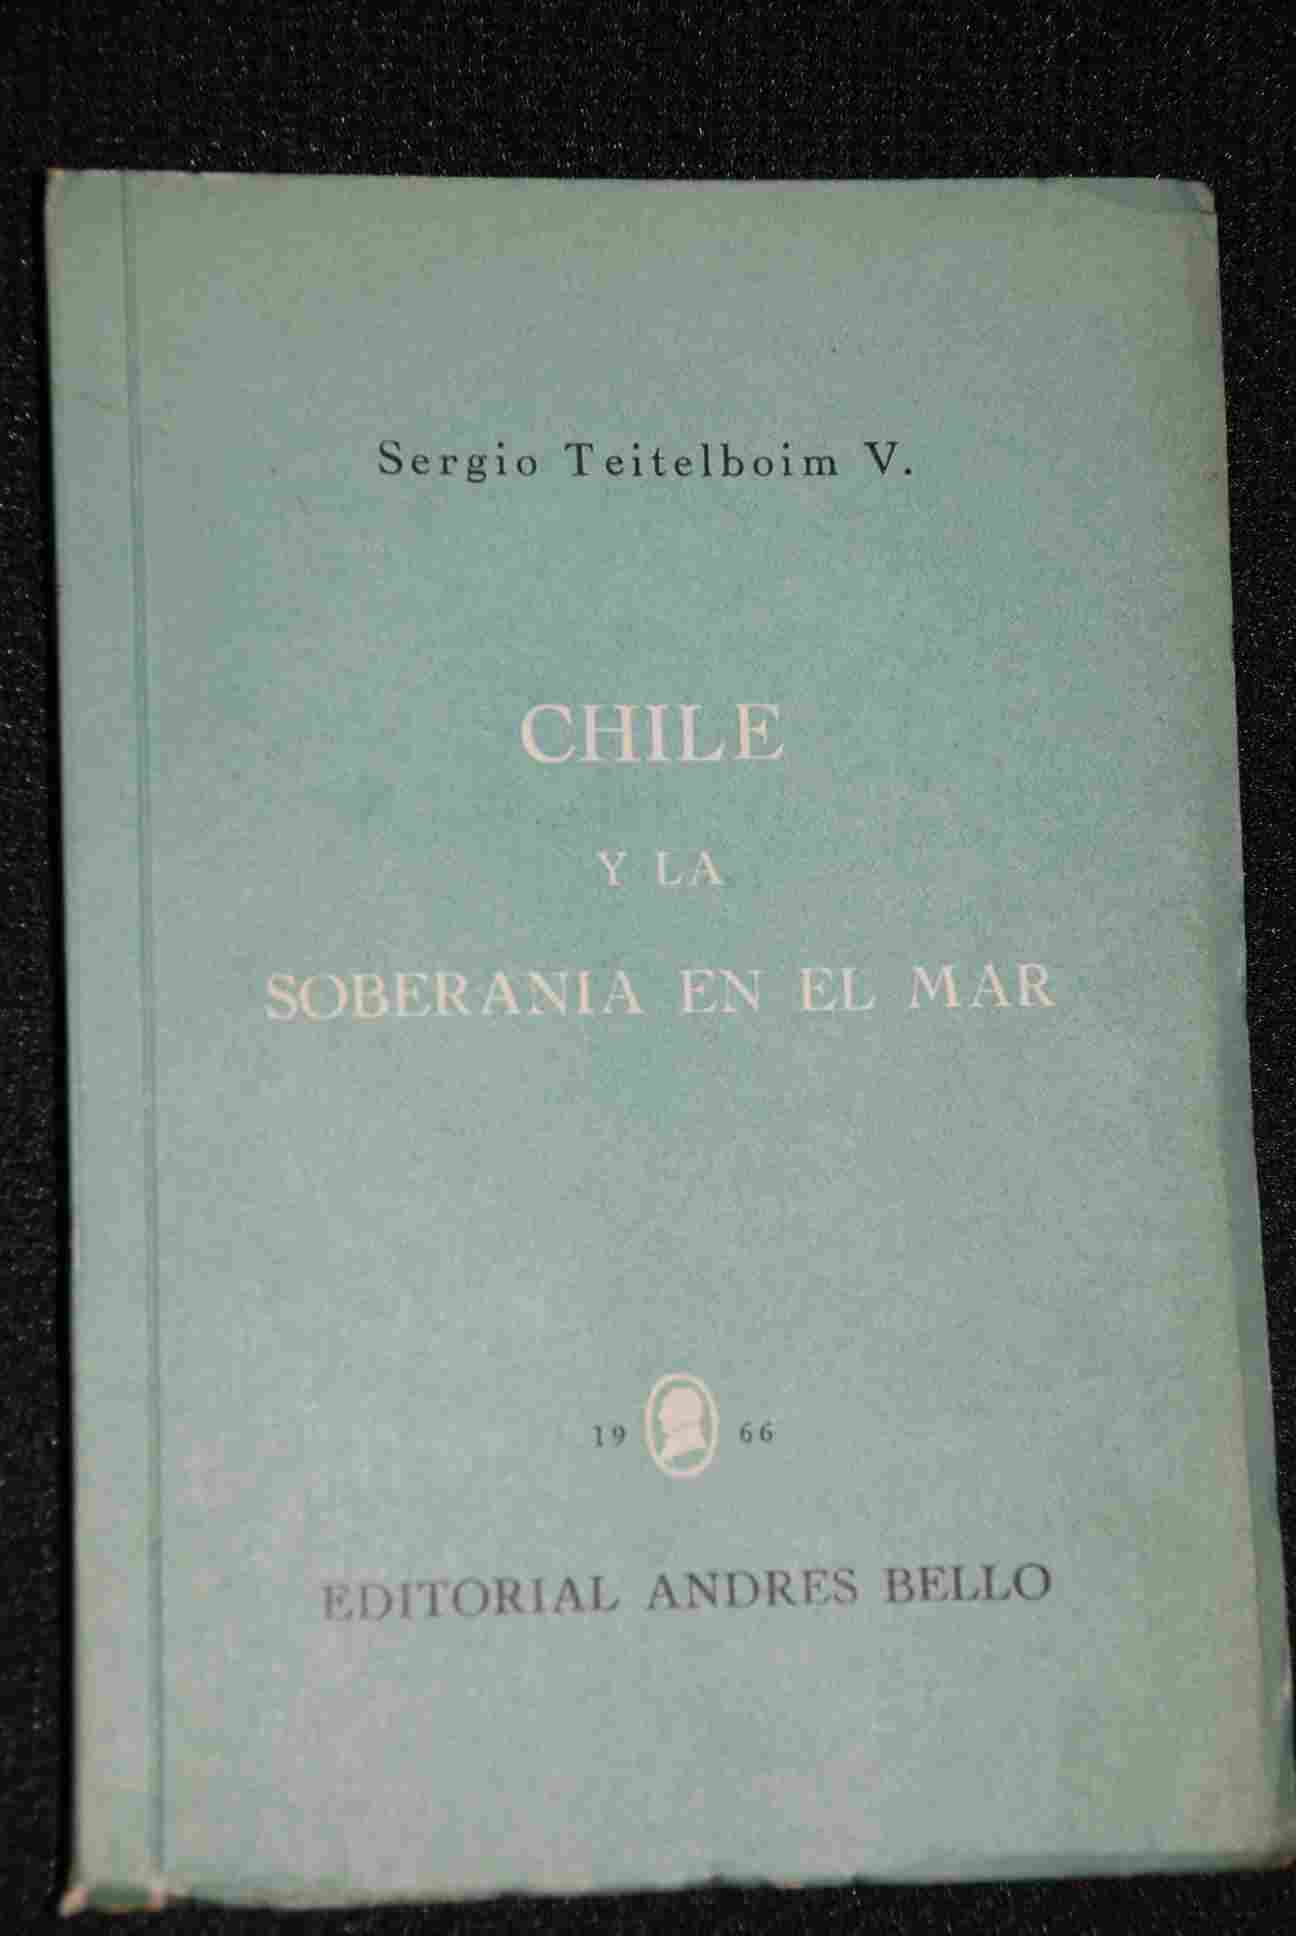 Sergio Teitelboim V. - Chile y la soberania en el mar